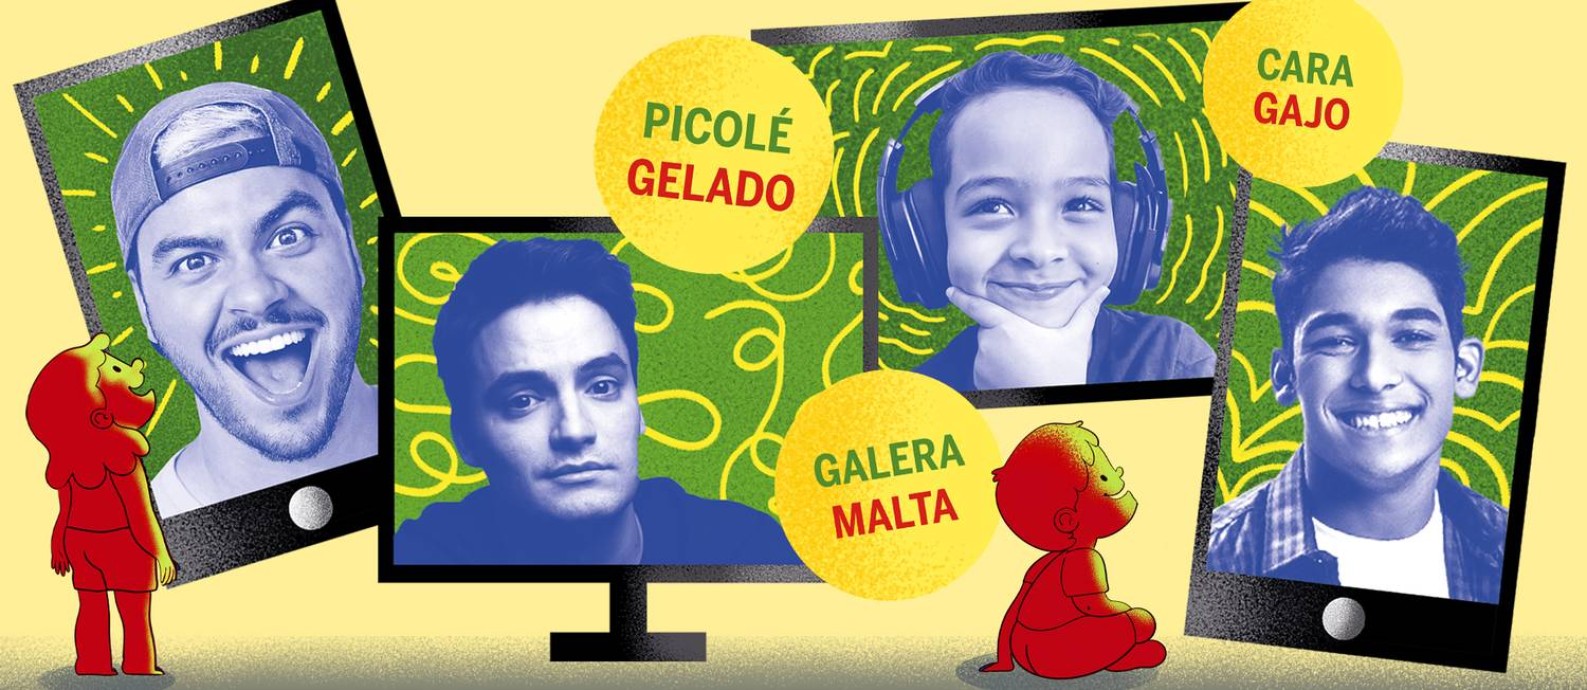 Youtubers brasileiros mudam o jeito de falar das crianças portuguesas Foto: Arte